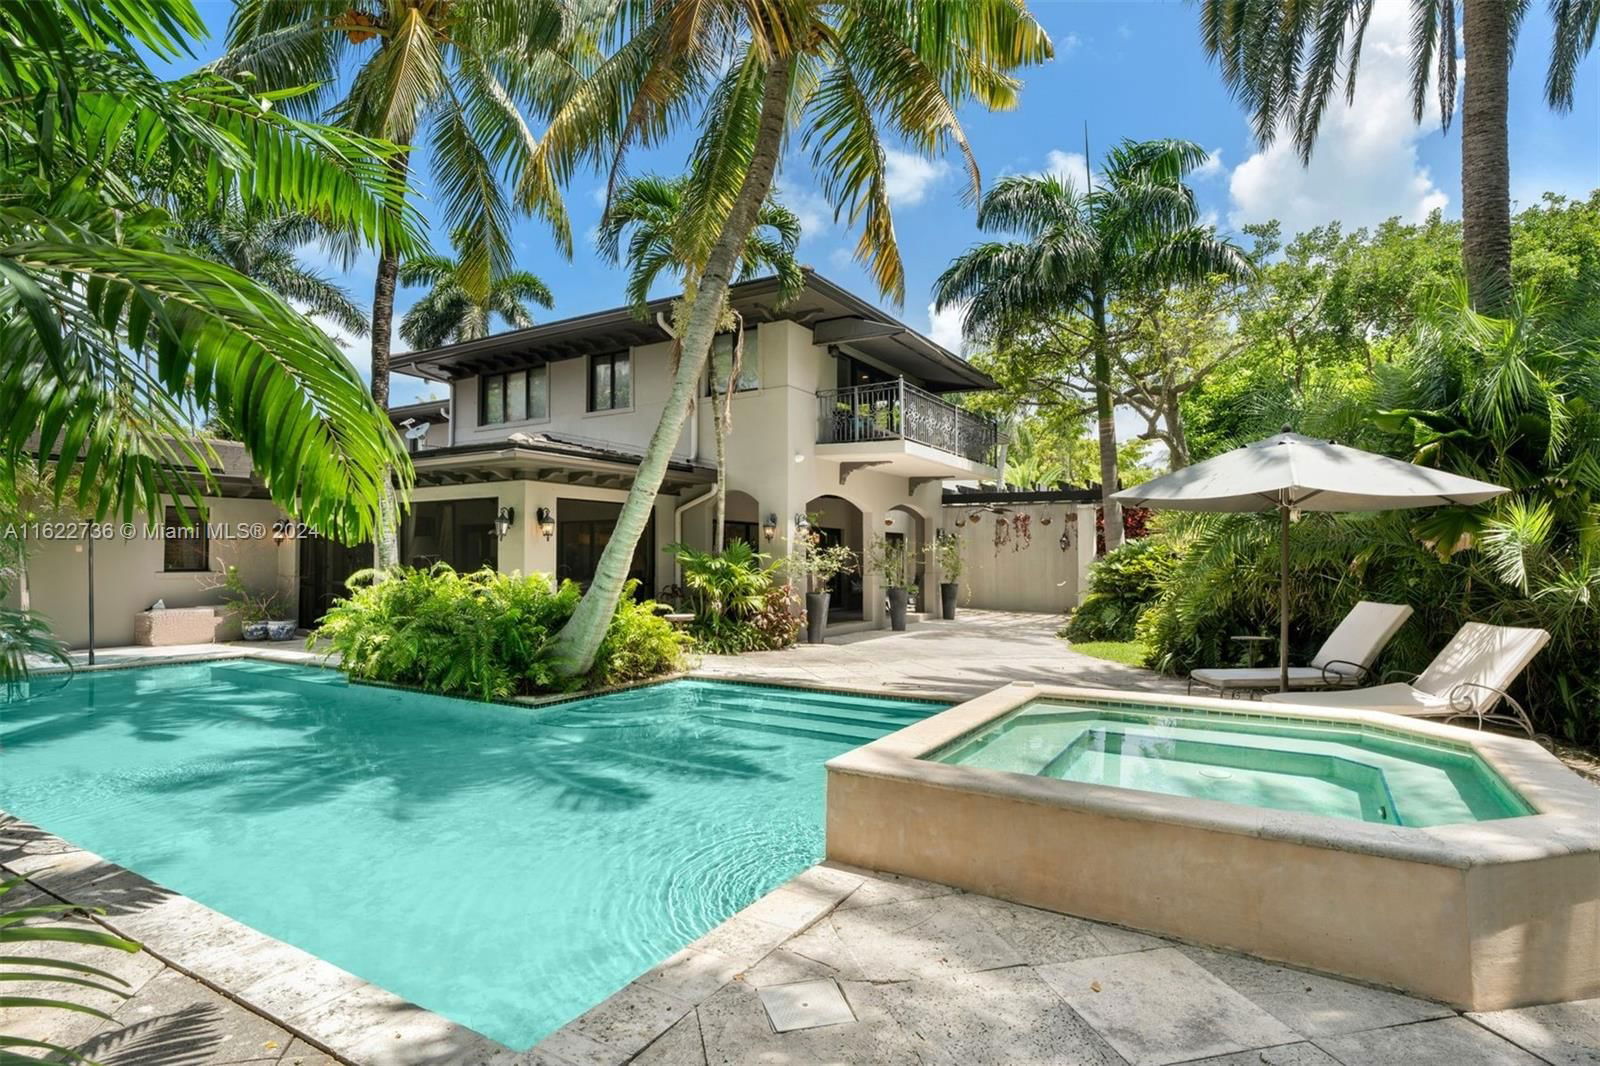 Real estate property located at 5077 Bay Rd, Miami-Dade County, LA GORCE GOLF SUB, Miami Beach, FL